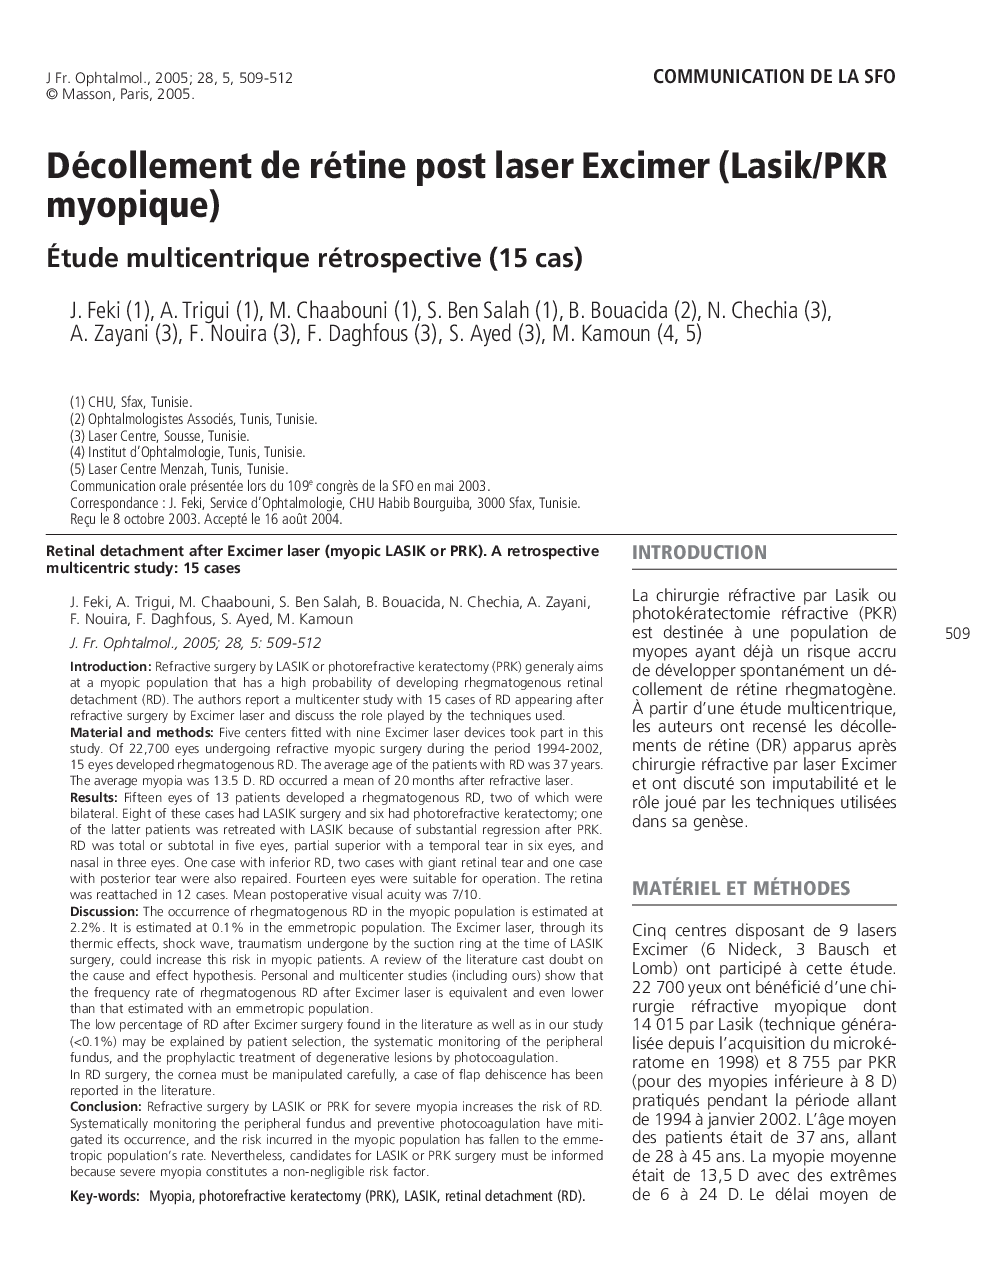 Décollement de rétine post laser Excimer (Lasik/PKR myopique)